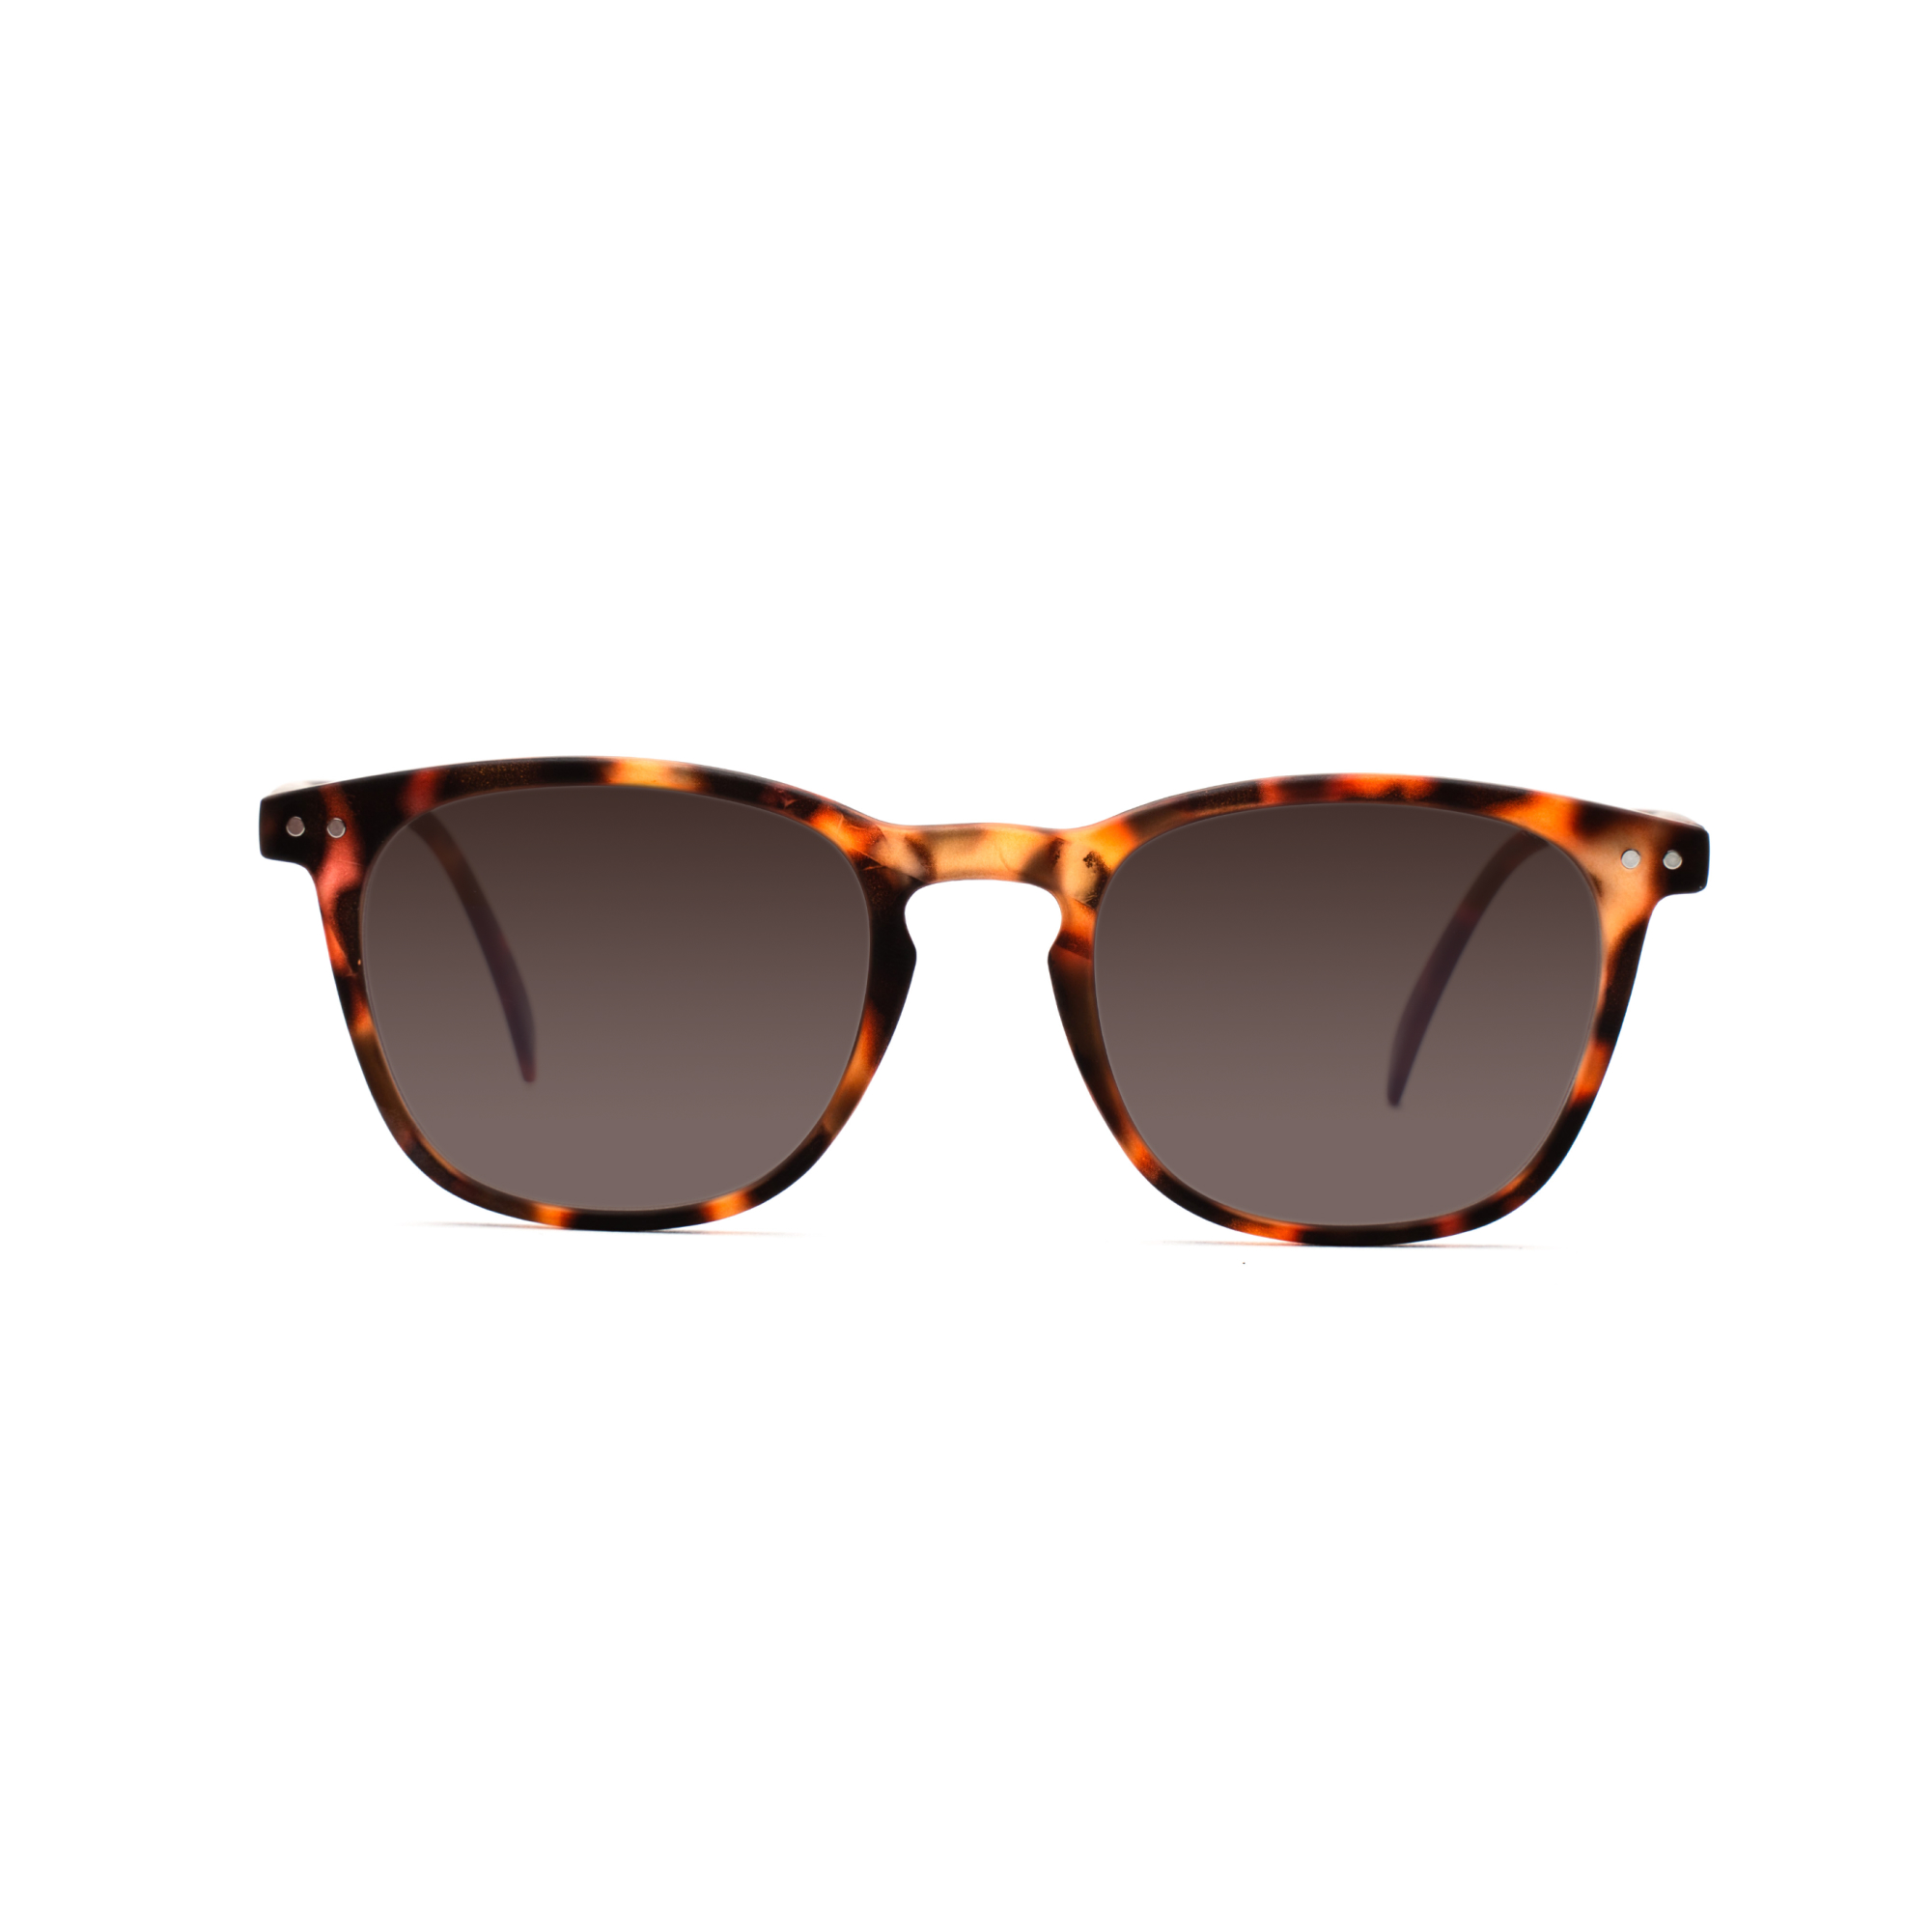 women's sunglasses – William UVSUN w - Tortoise